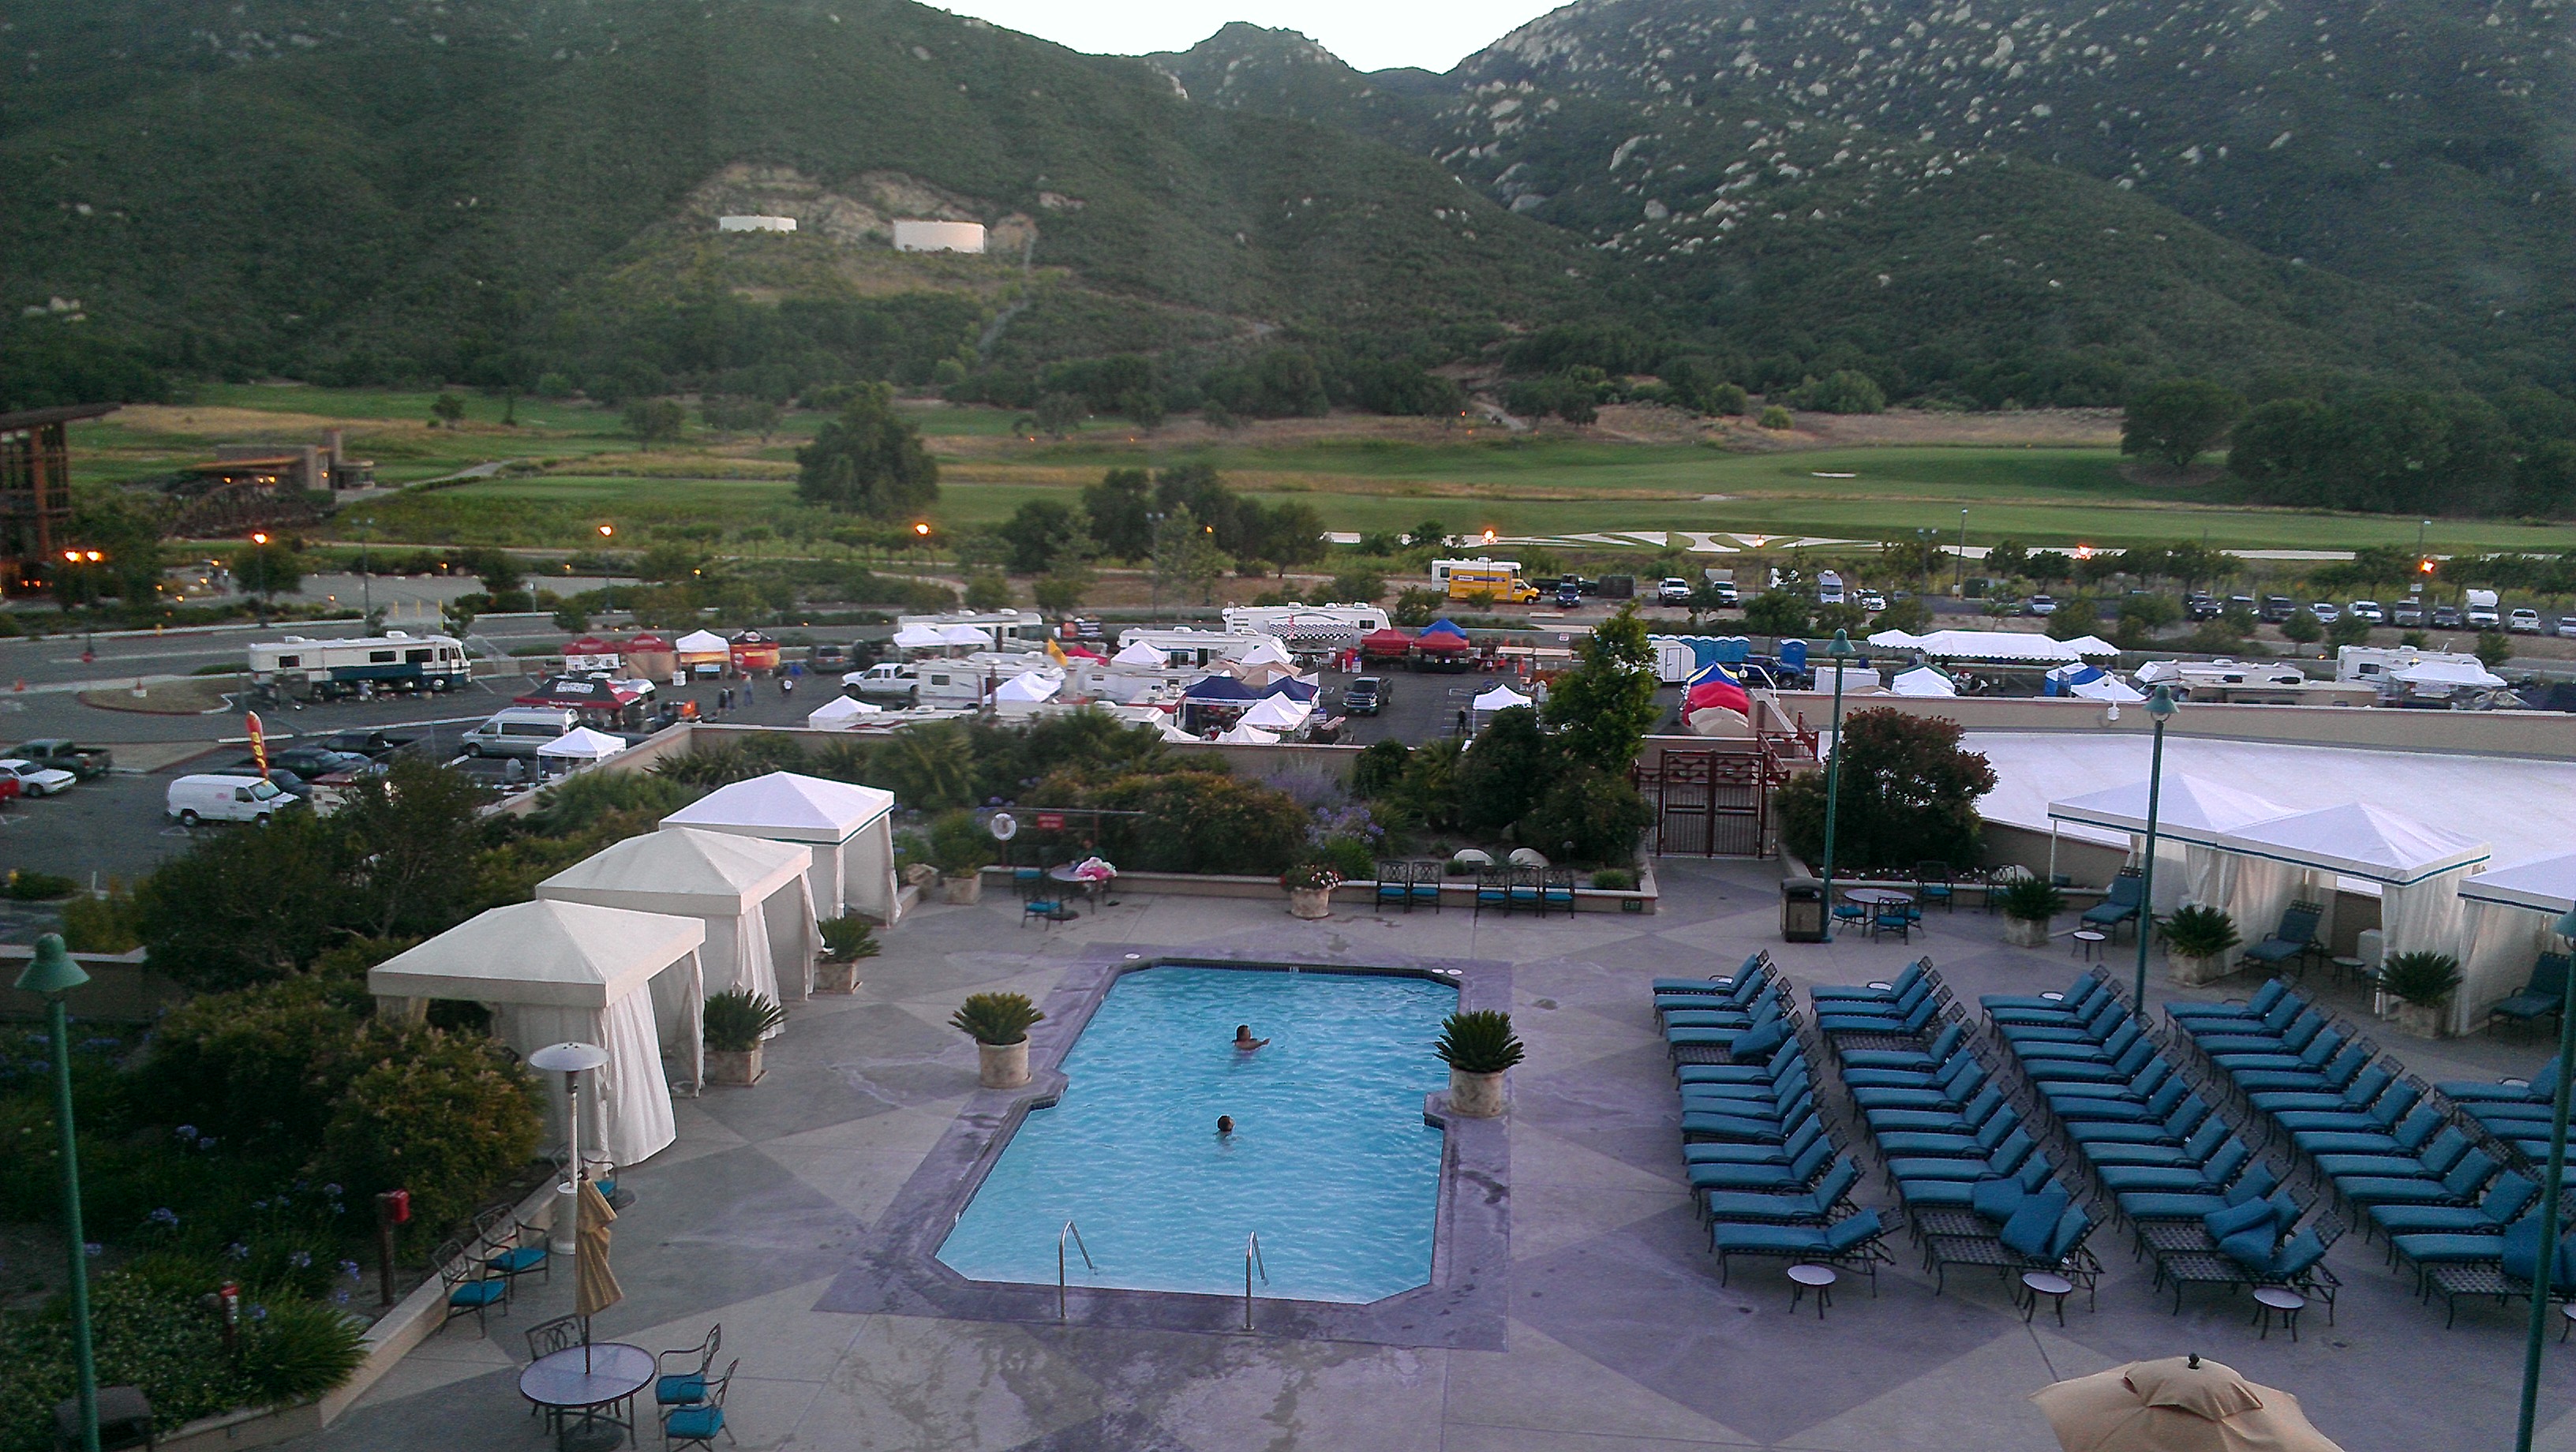 pechanga resort and casino temecula california